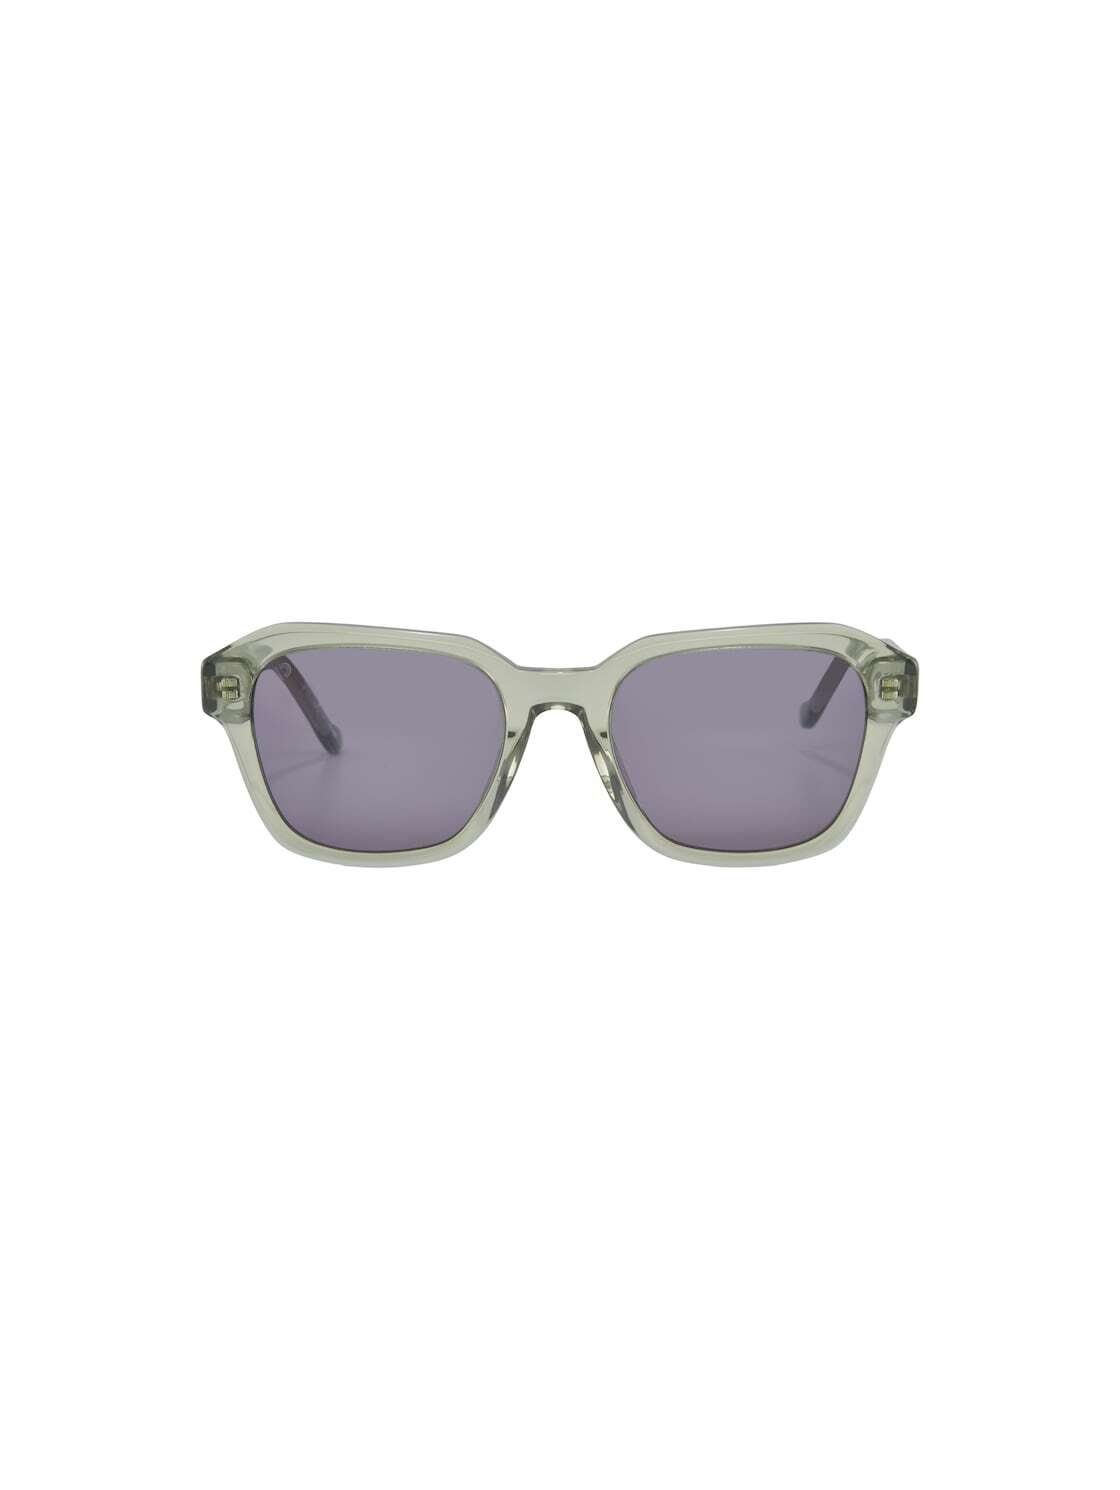 Wayfarer Sonnenbrillen online kaufen | OTTO